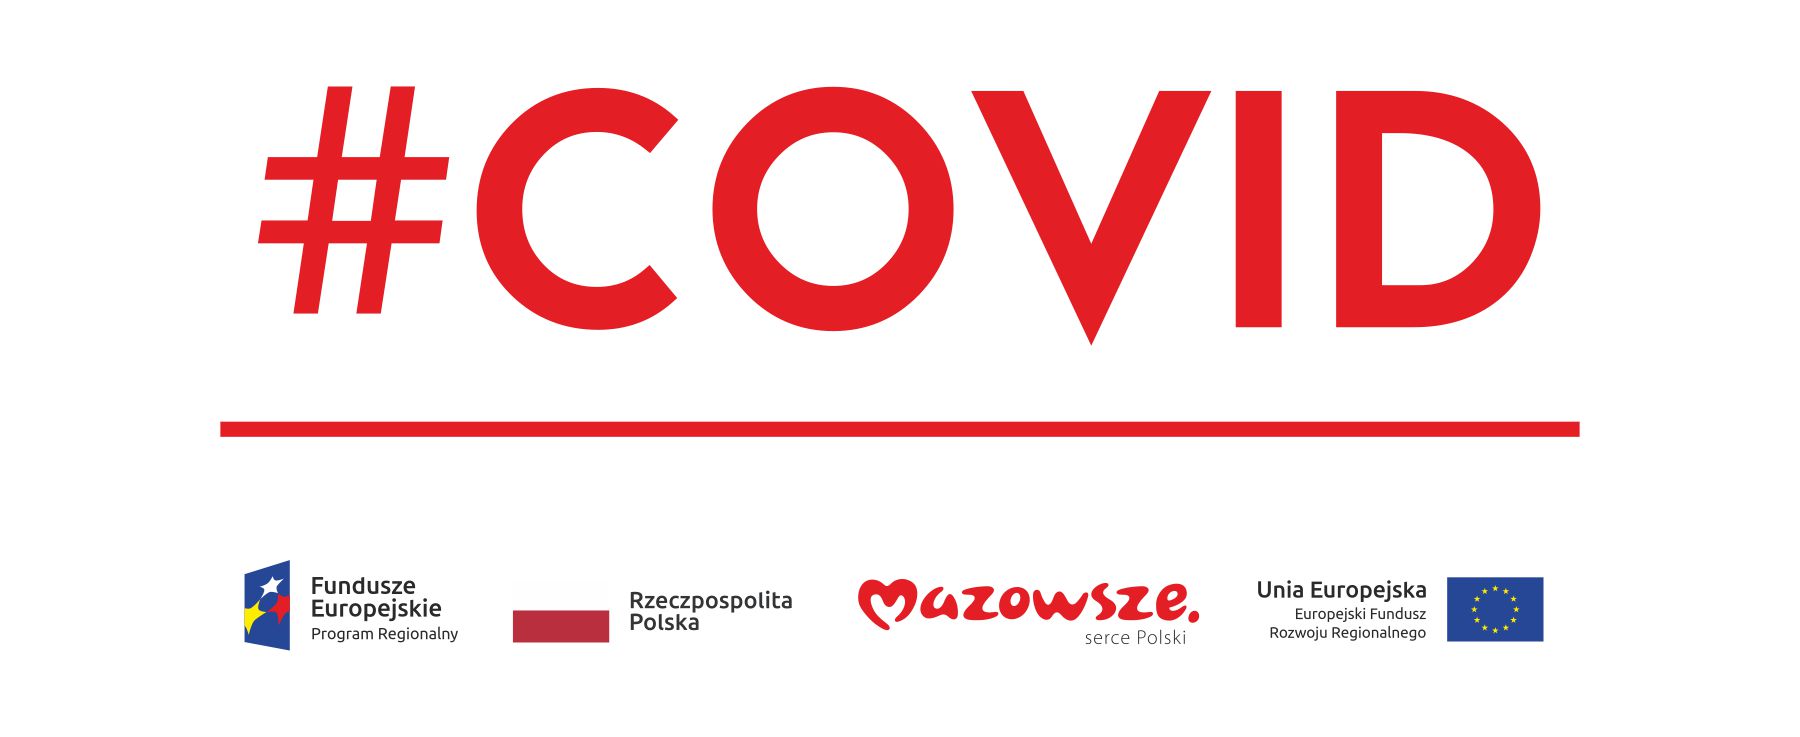 Zakup niezbędnego sprzętu oraz adaptacja pomieszczeń w związku z pojawieniem się koronawirusa SARS-CoV-2 na terenie województwa mazowieckiego - lista aparatury medycznej i wyposażenia medycznego 